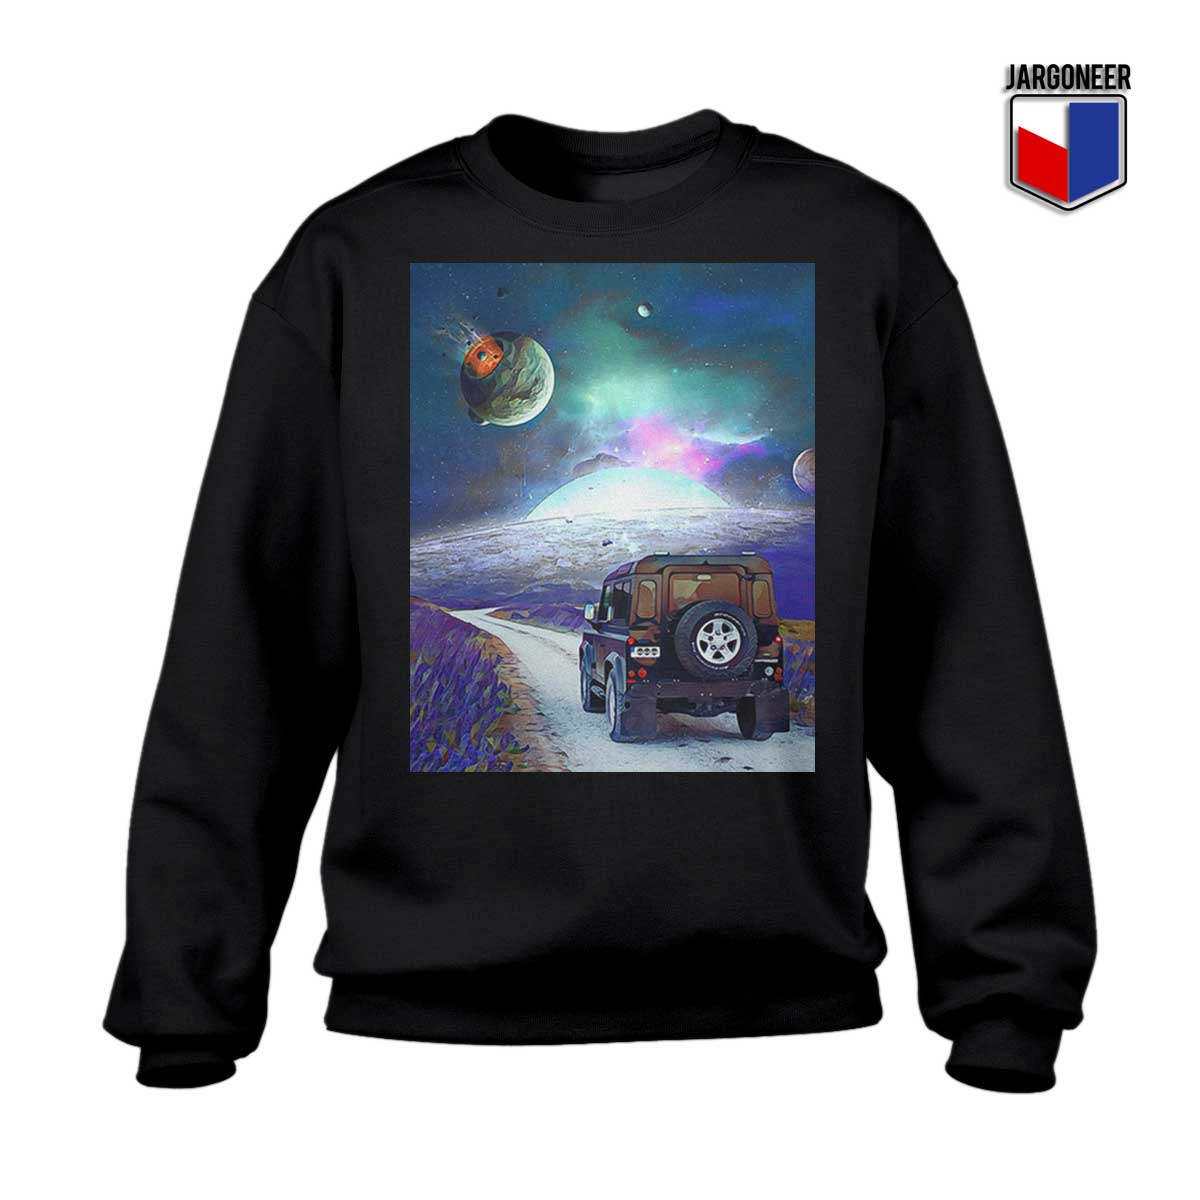 Adventure Mooon Space Sweatshirt - Shop Unique Graphic Cool Shirt Designs